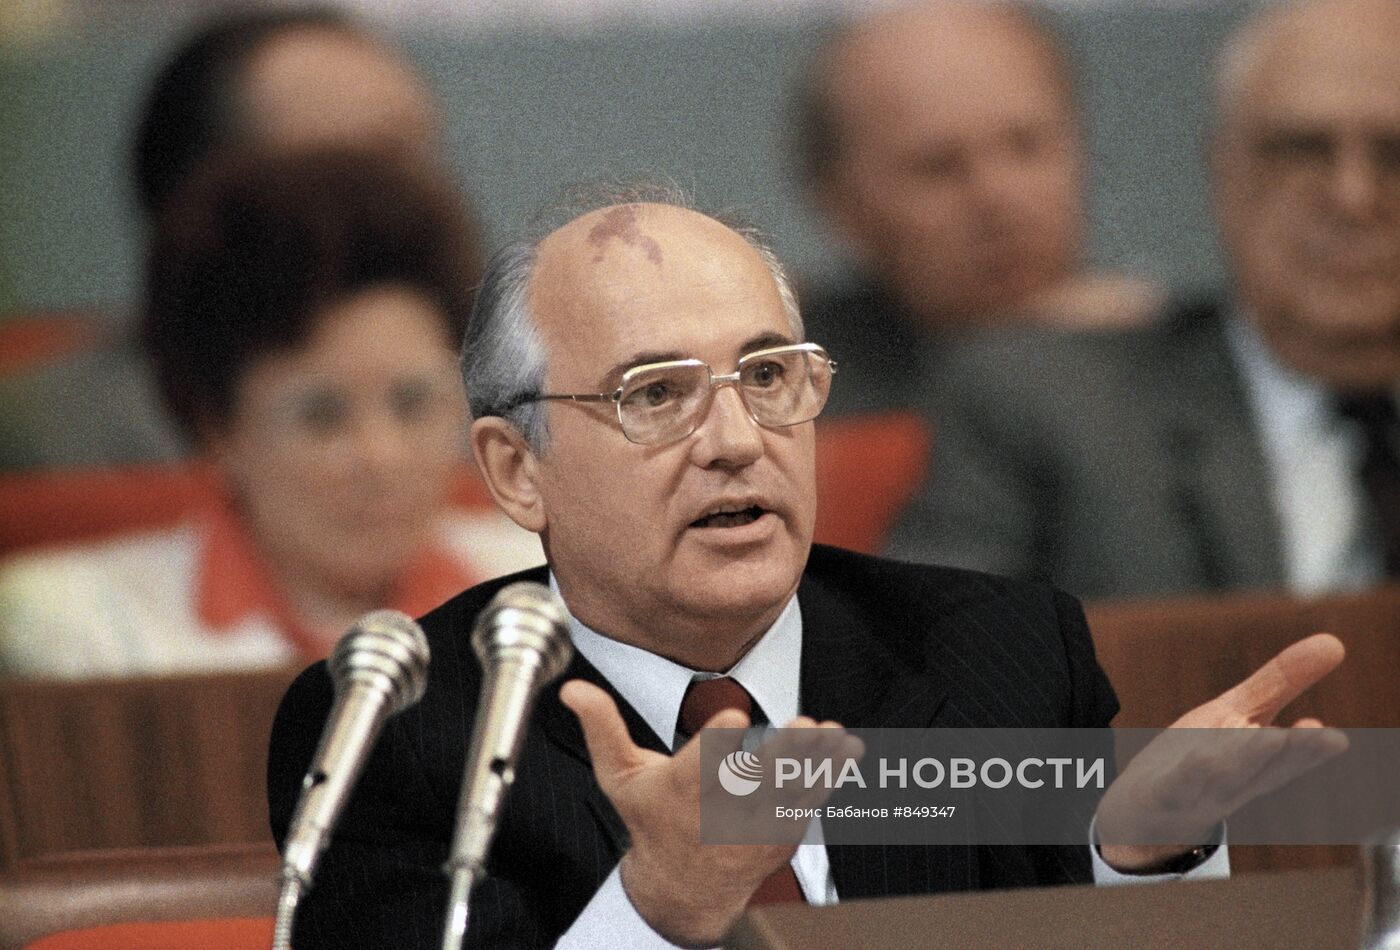 Михаил Горбачев во время выступления